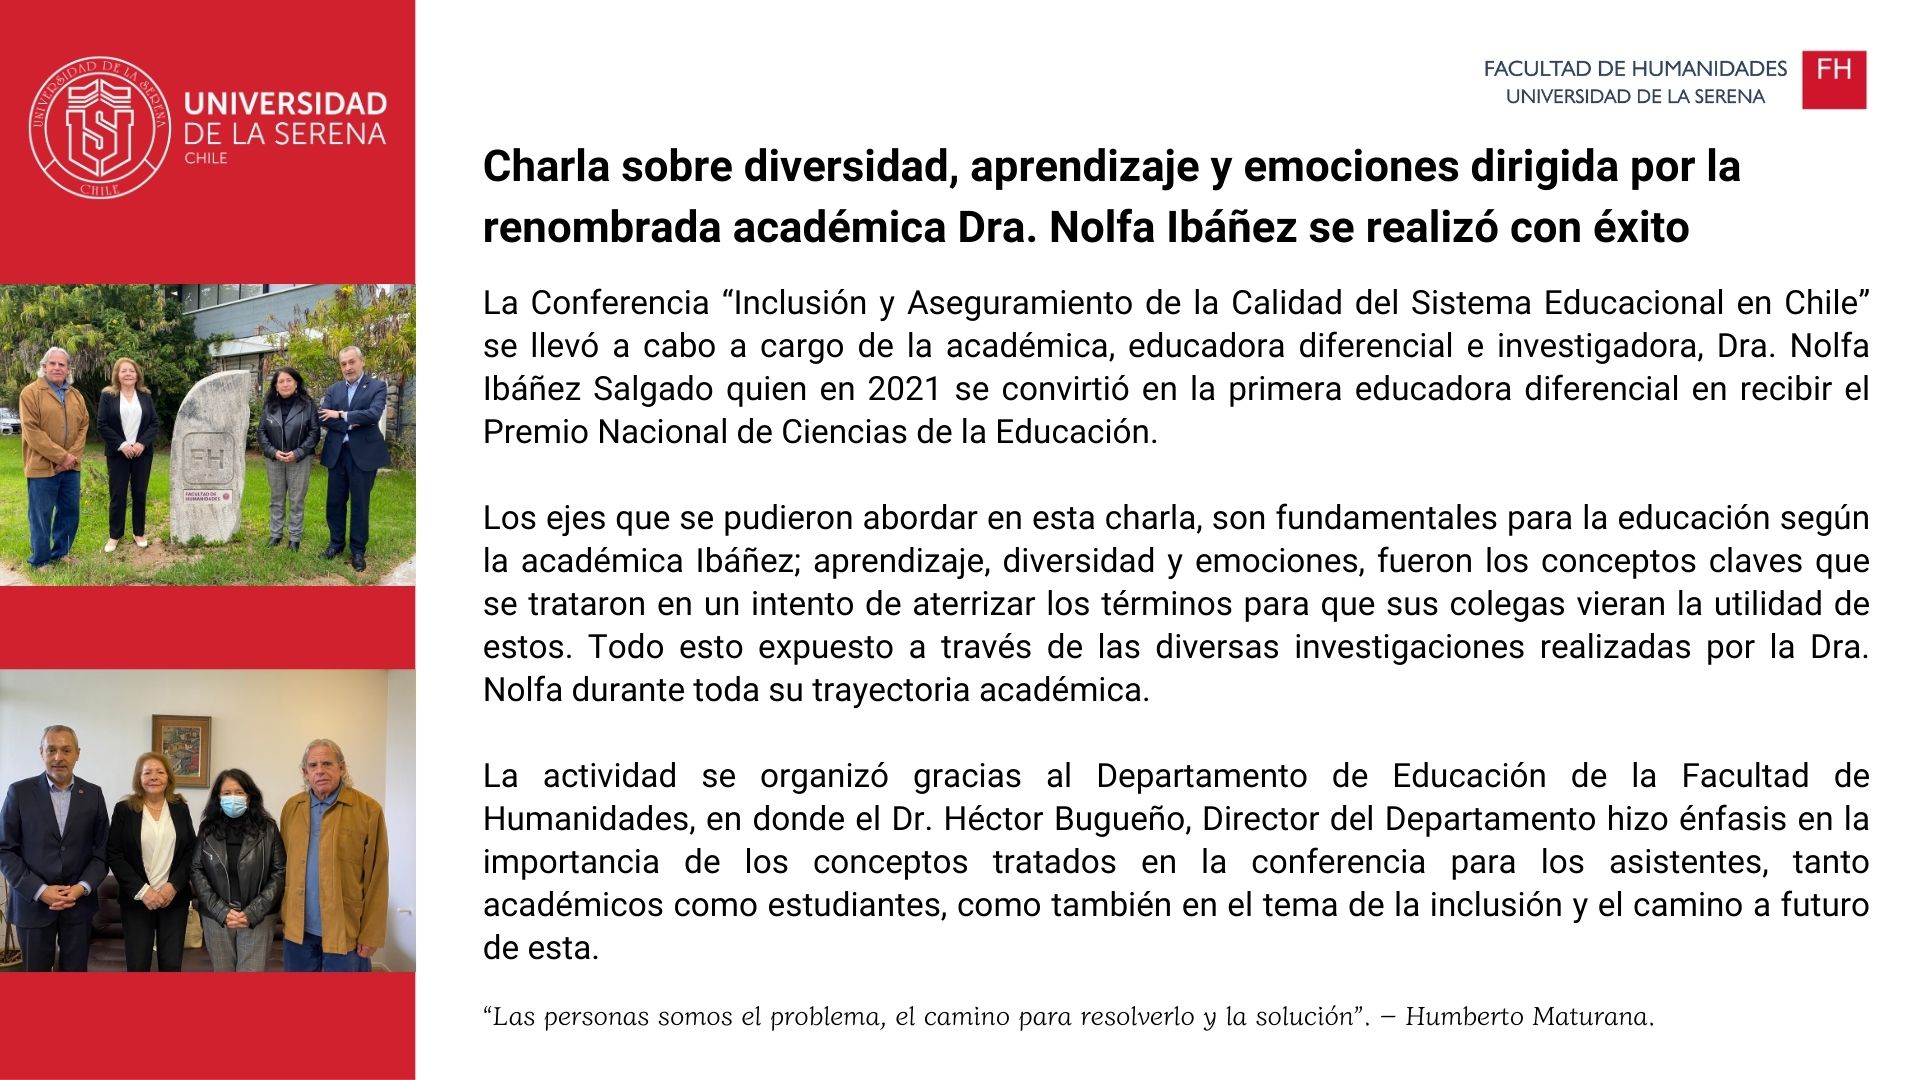 Charla sobre diversidad, aprendizaje y emociones dirigida por la renombrada académica Dra. Nolfa Ibáñez se realizócon éxito